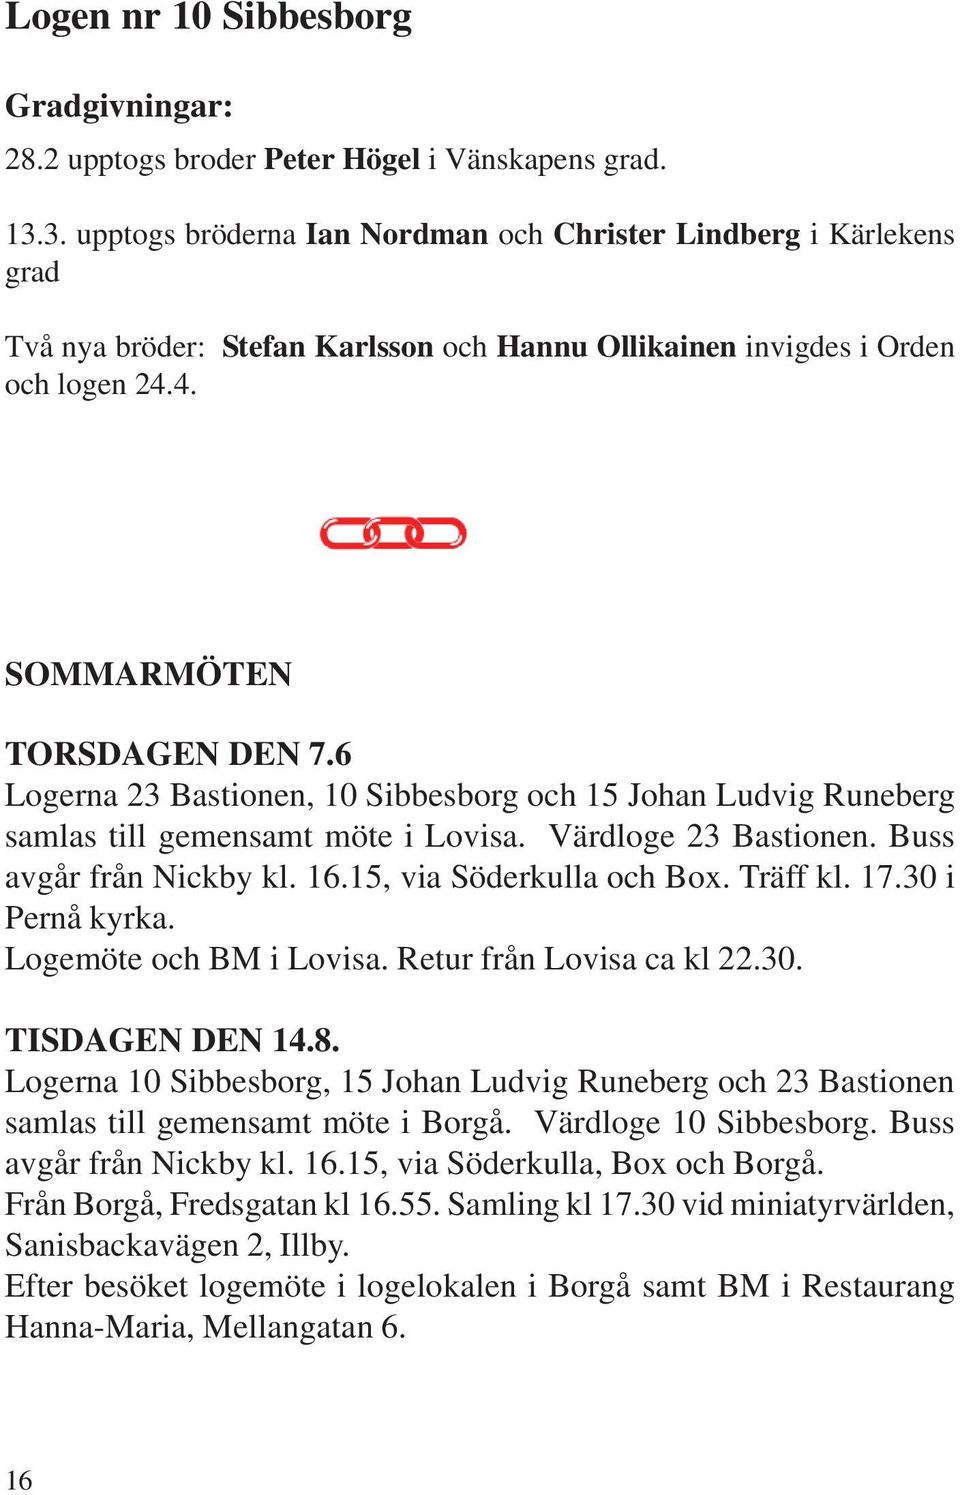 6 Logerna 23 Bastionen, 10 Sibbesborg och 15 Johan Ludvig Runeberg samlas till gemensamt möte i Lovisa. Värdloge 23 Bastionen. Buss avgår från Nickby kl. 16.15, via Söderkulla och Box. Träff kl. 17.